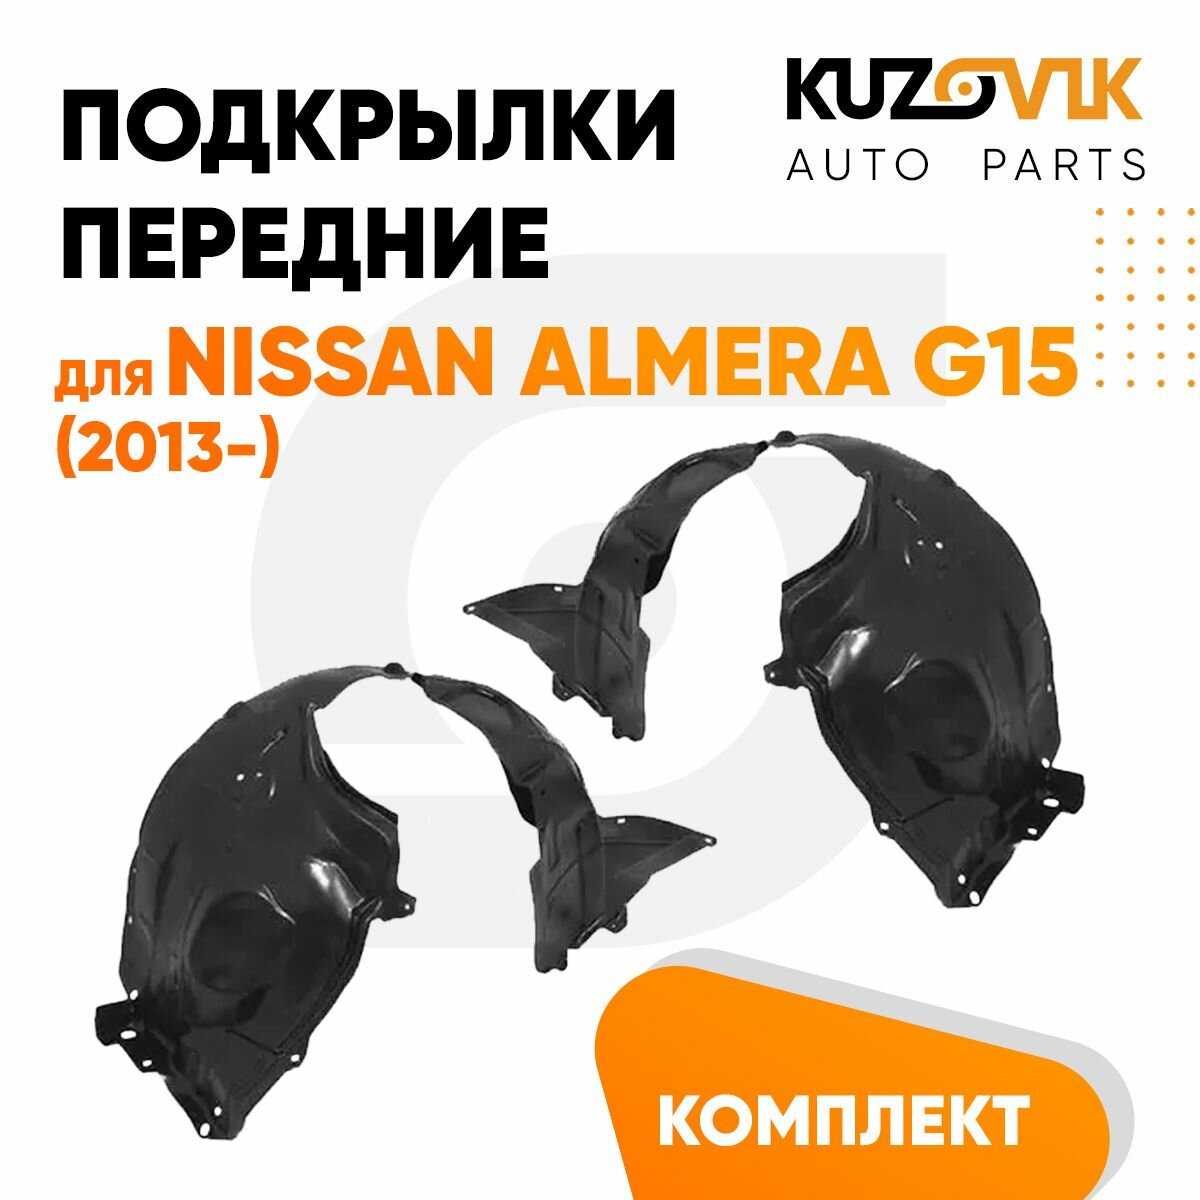 Подкрылки передние комплект Nissan Almera G15 (2013-)